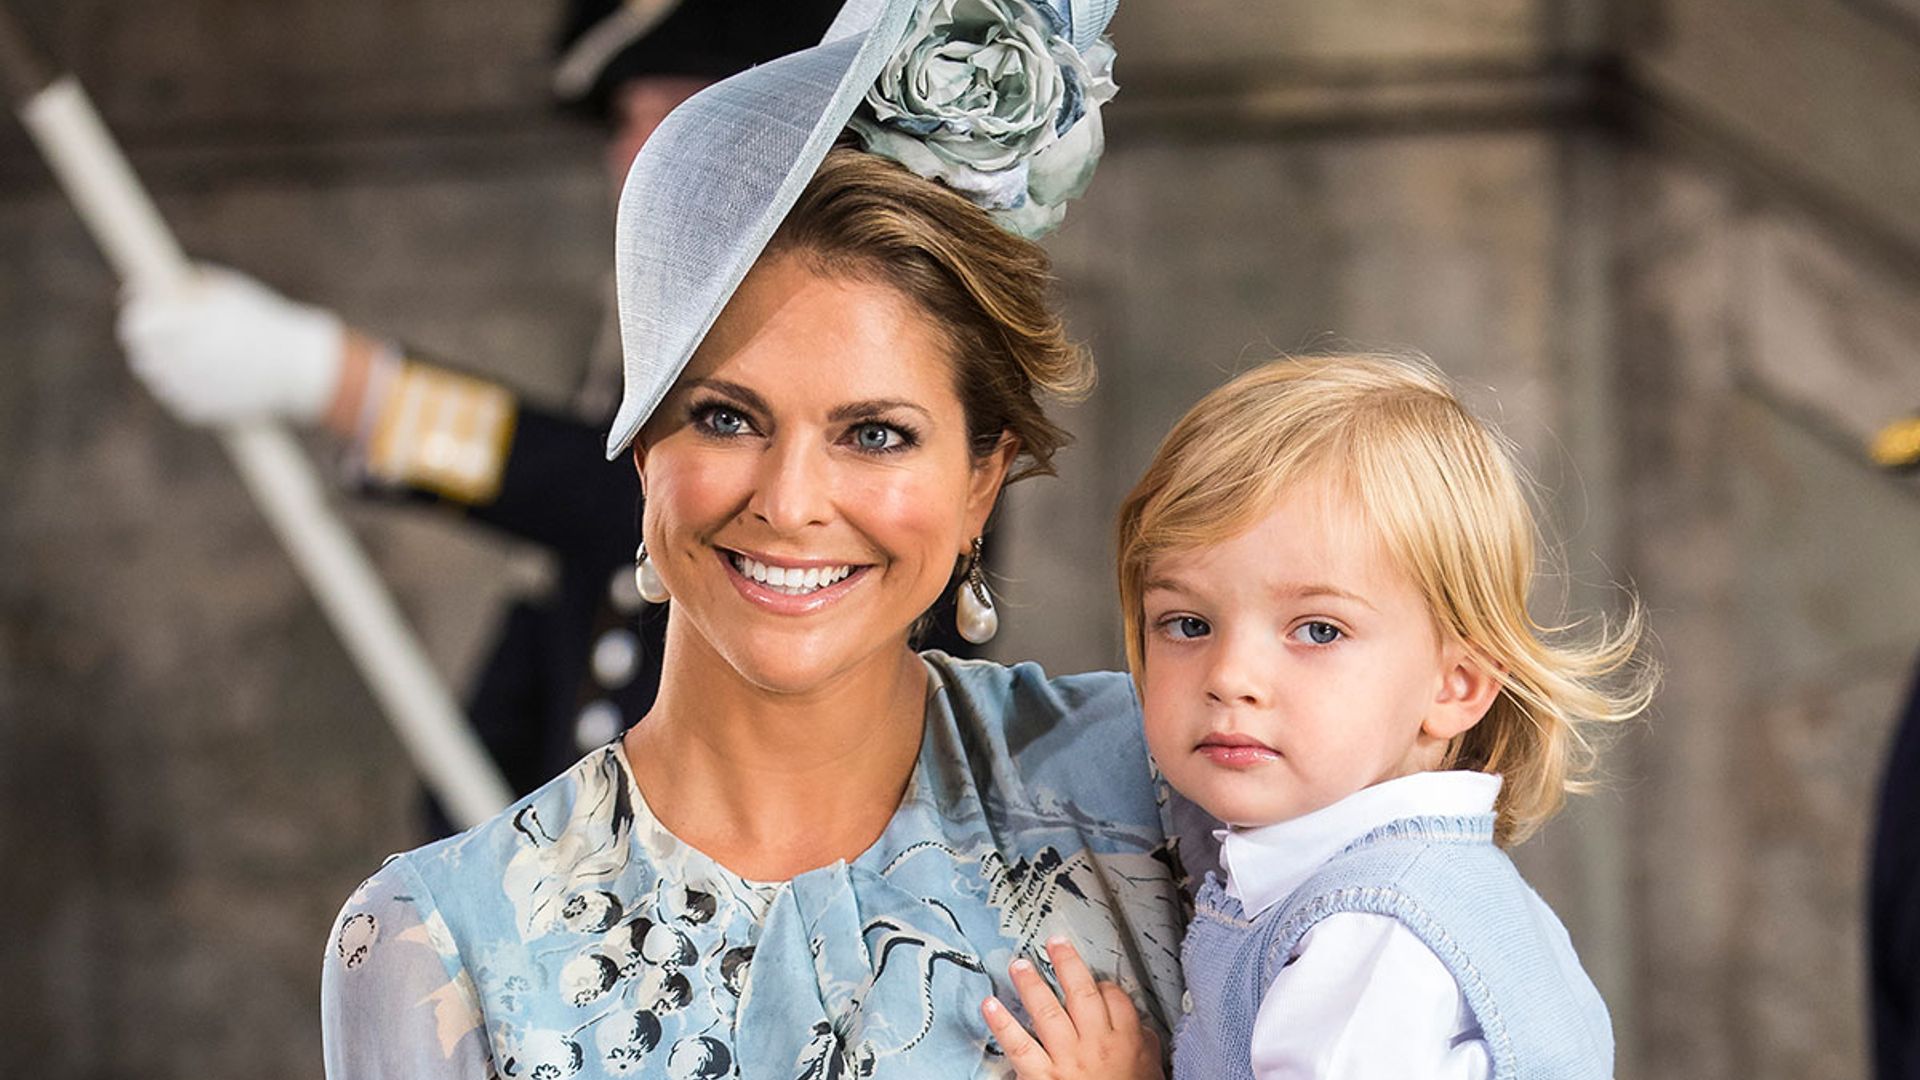 Sweden's Princess Madeleine shares rare photo of Prince Nicolas to mark special day